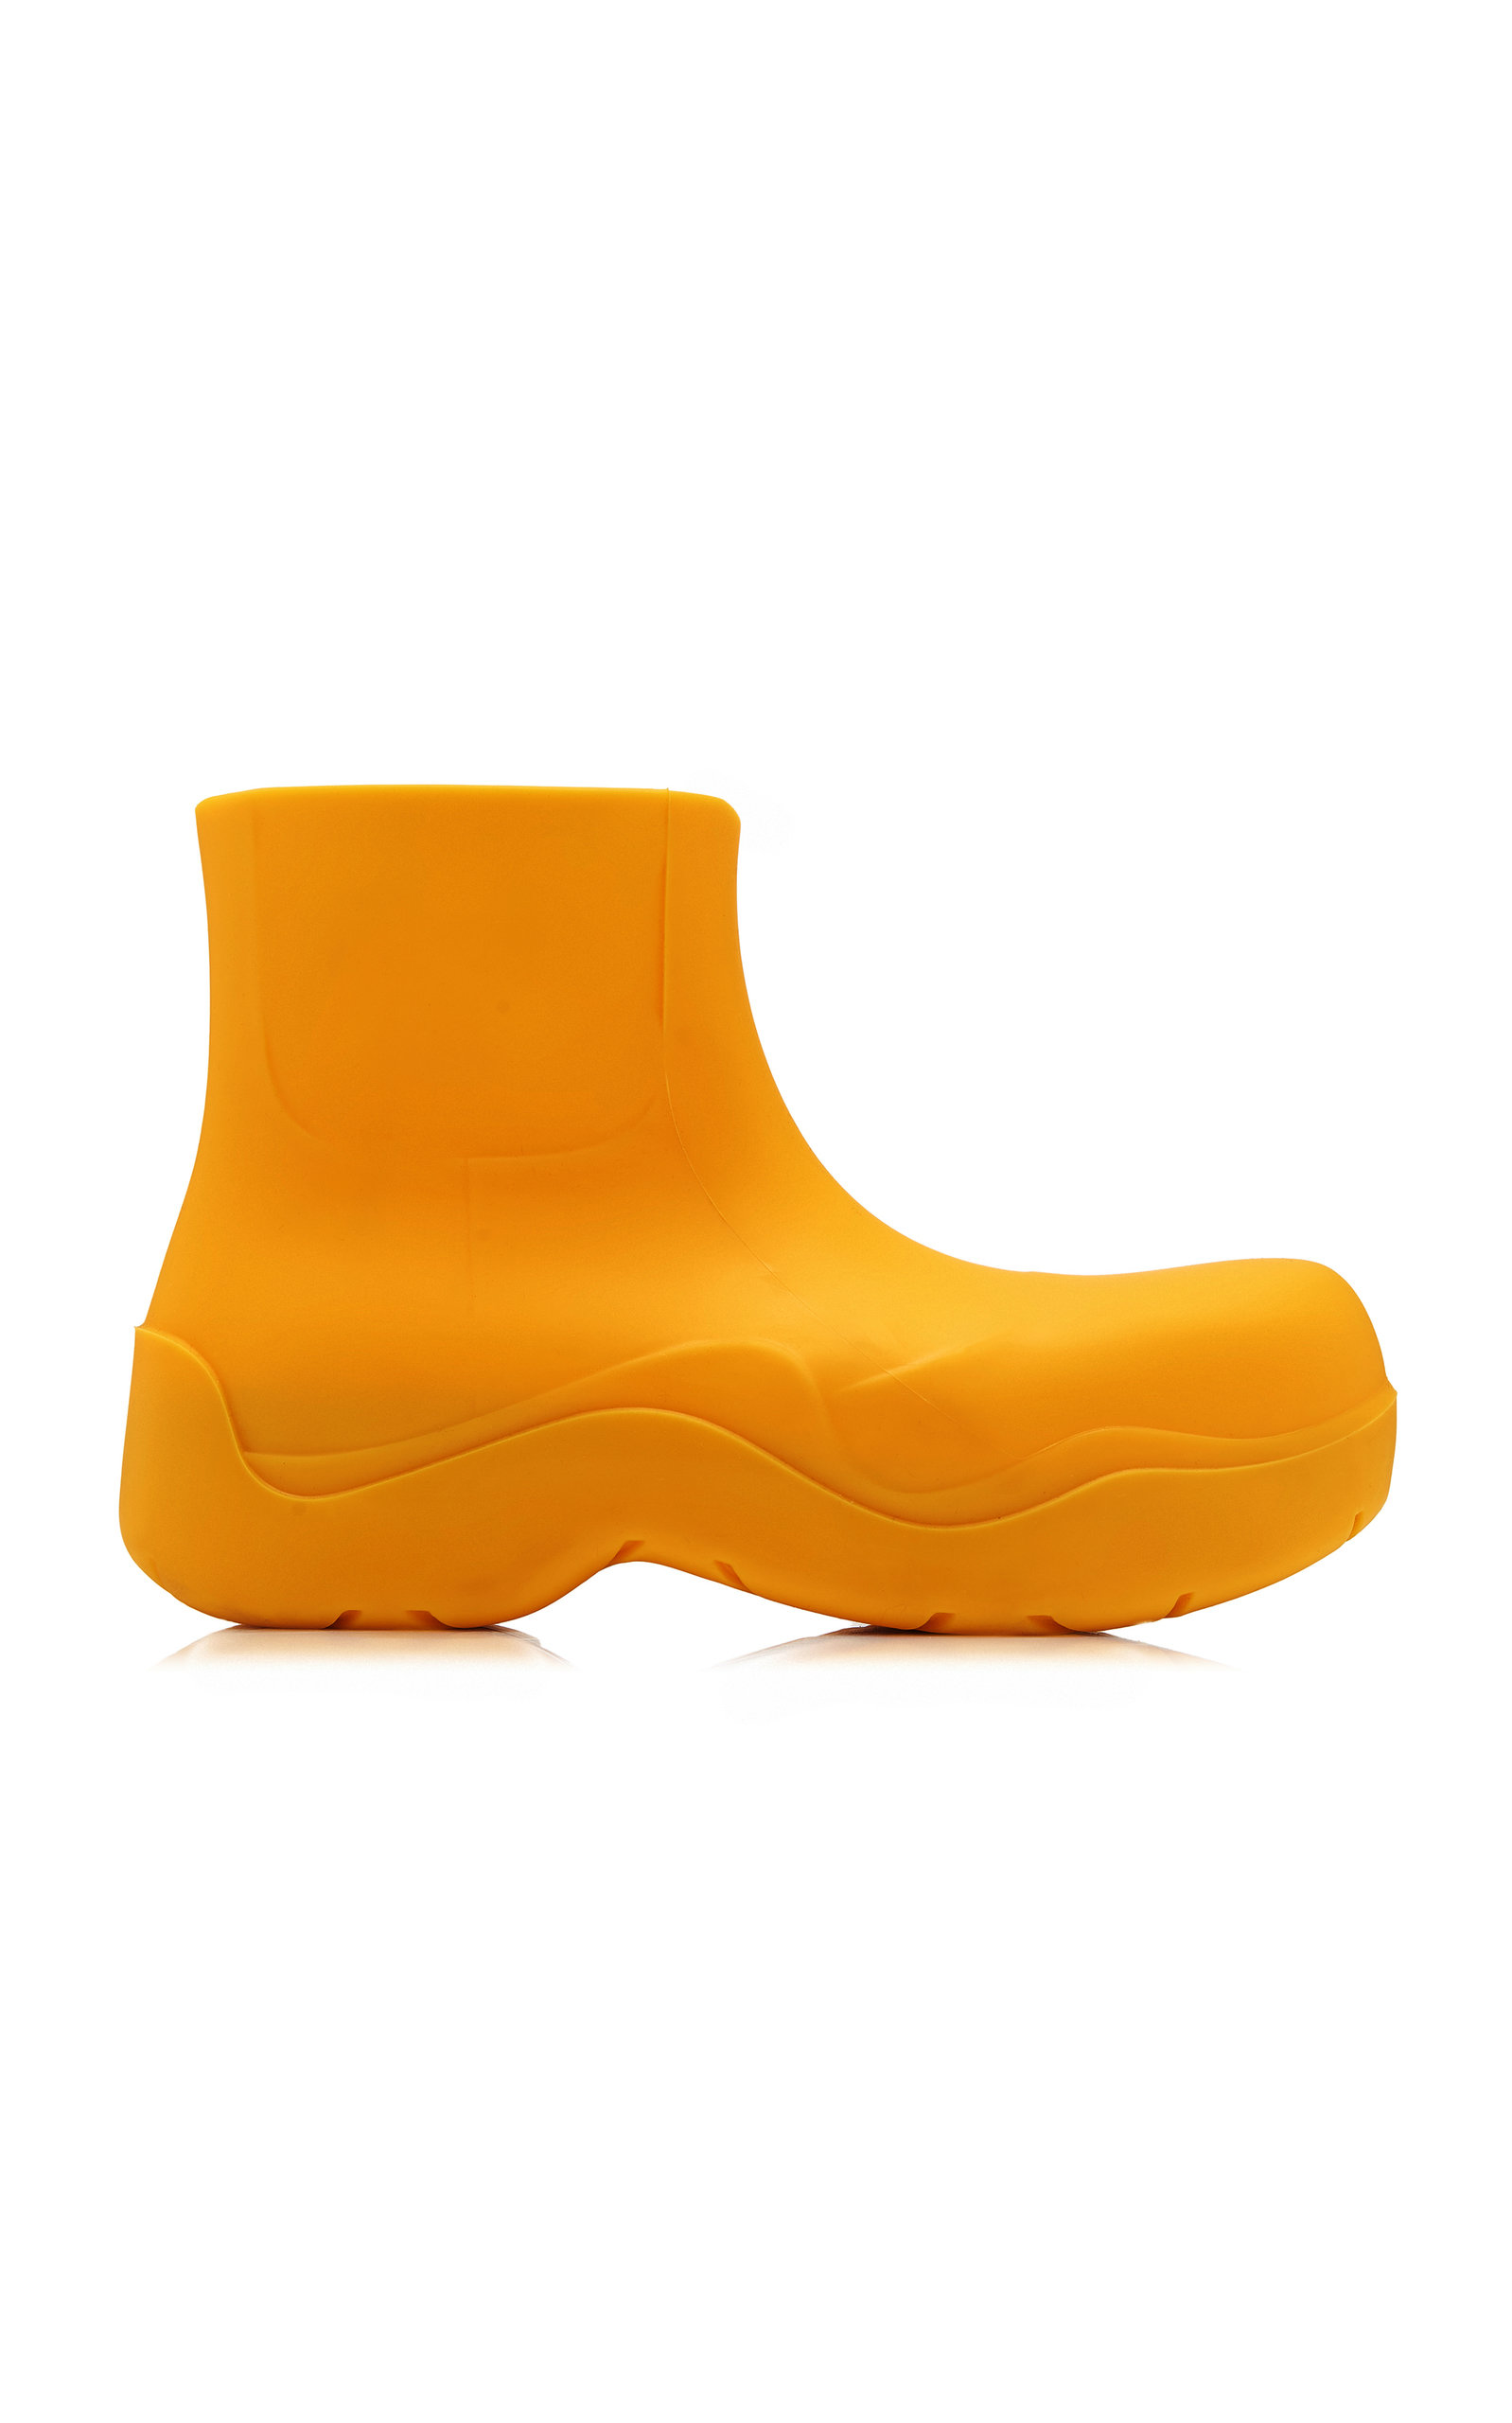 Bottega Veneta - Women's Puddle Boots - Orange - IT 35 - Moda Operandi